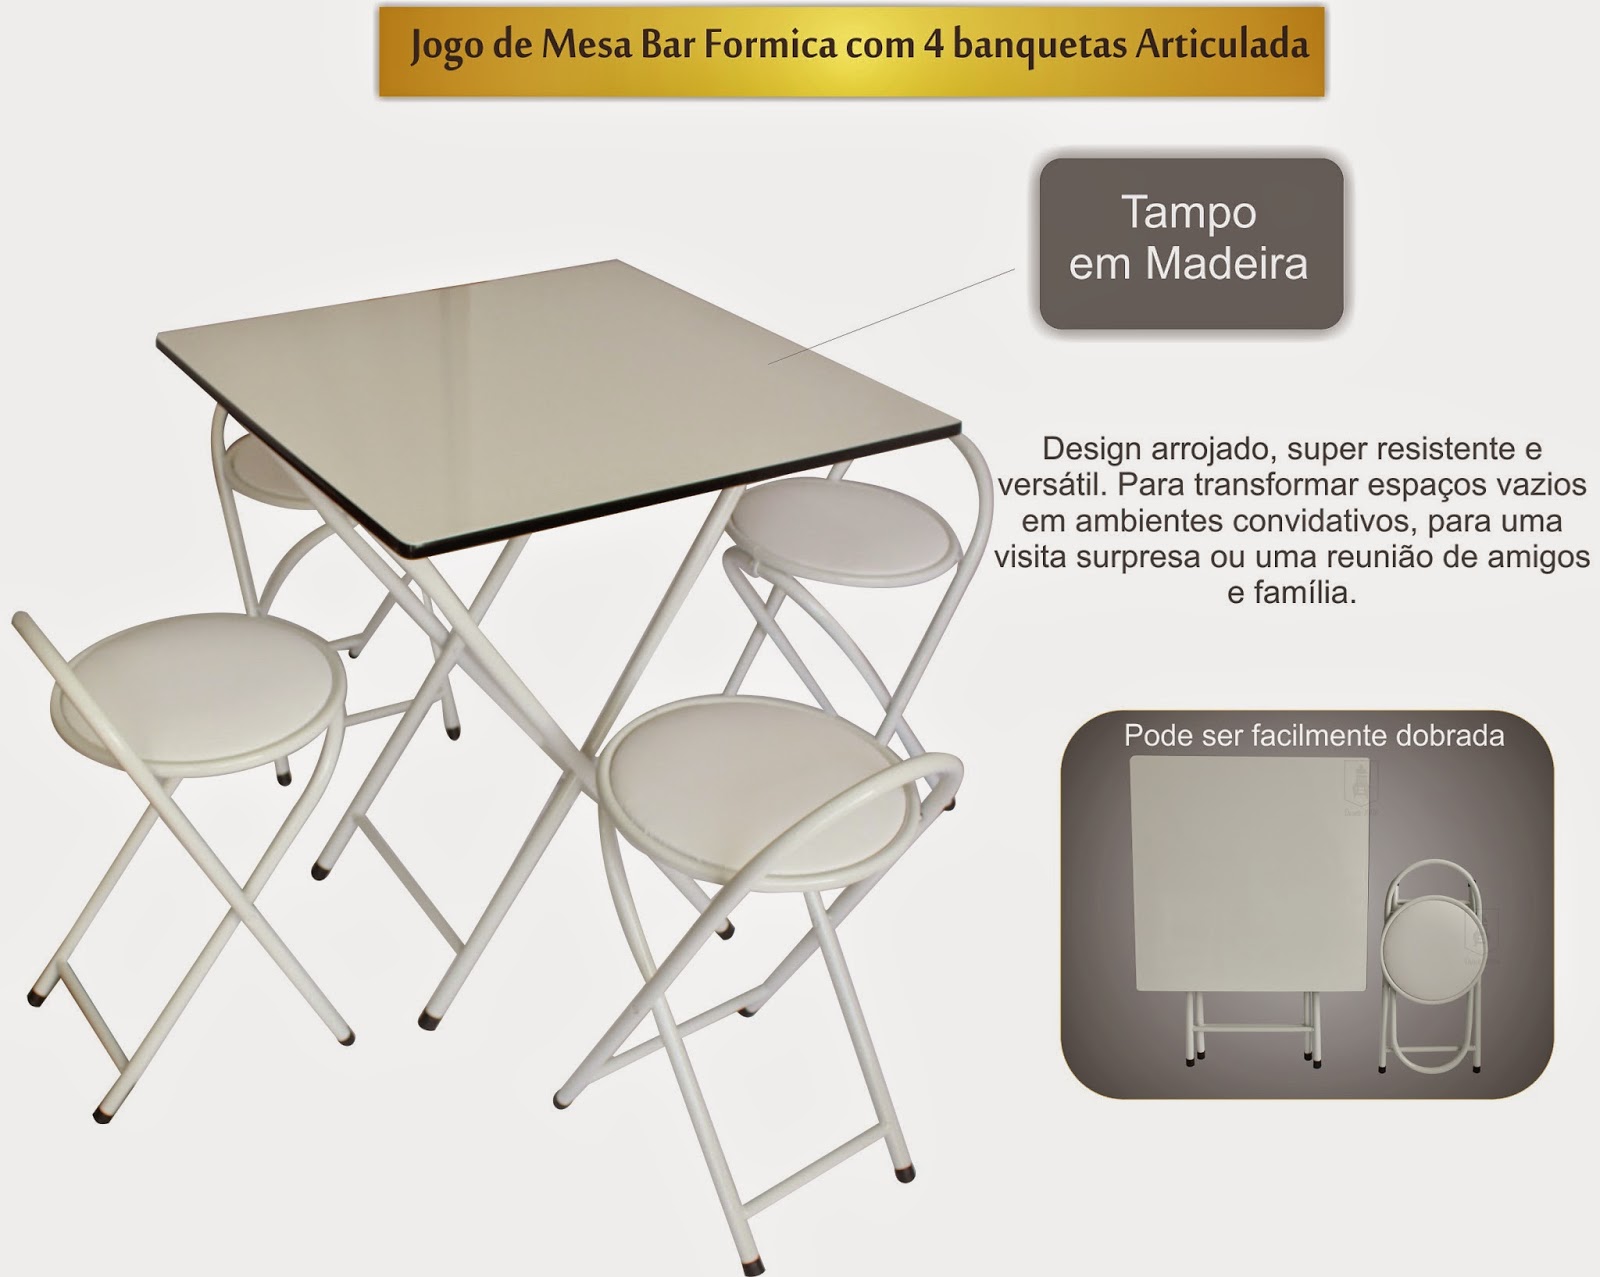  http://www.emporioconceito.com.br/jogo-de-mesa-bar-dobravel-68x68-tampo-madeira-c-4-banquetas-01.html